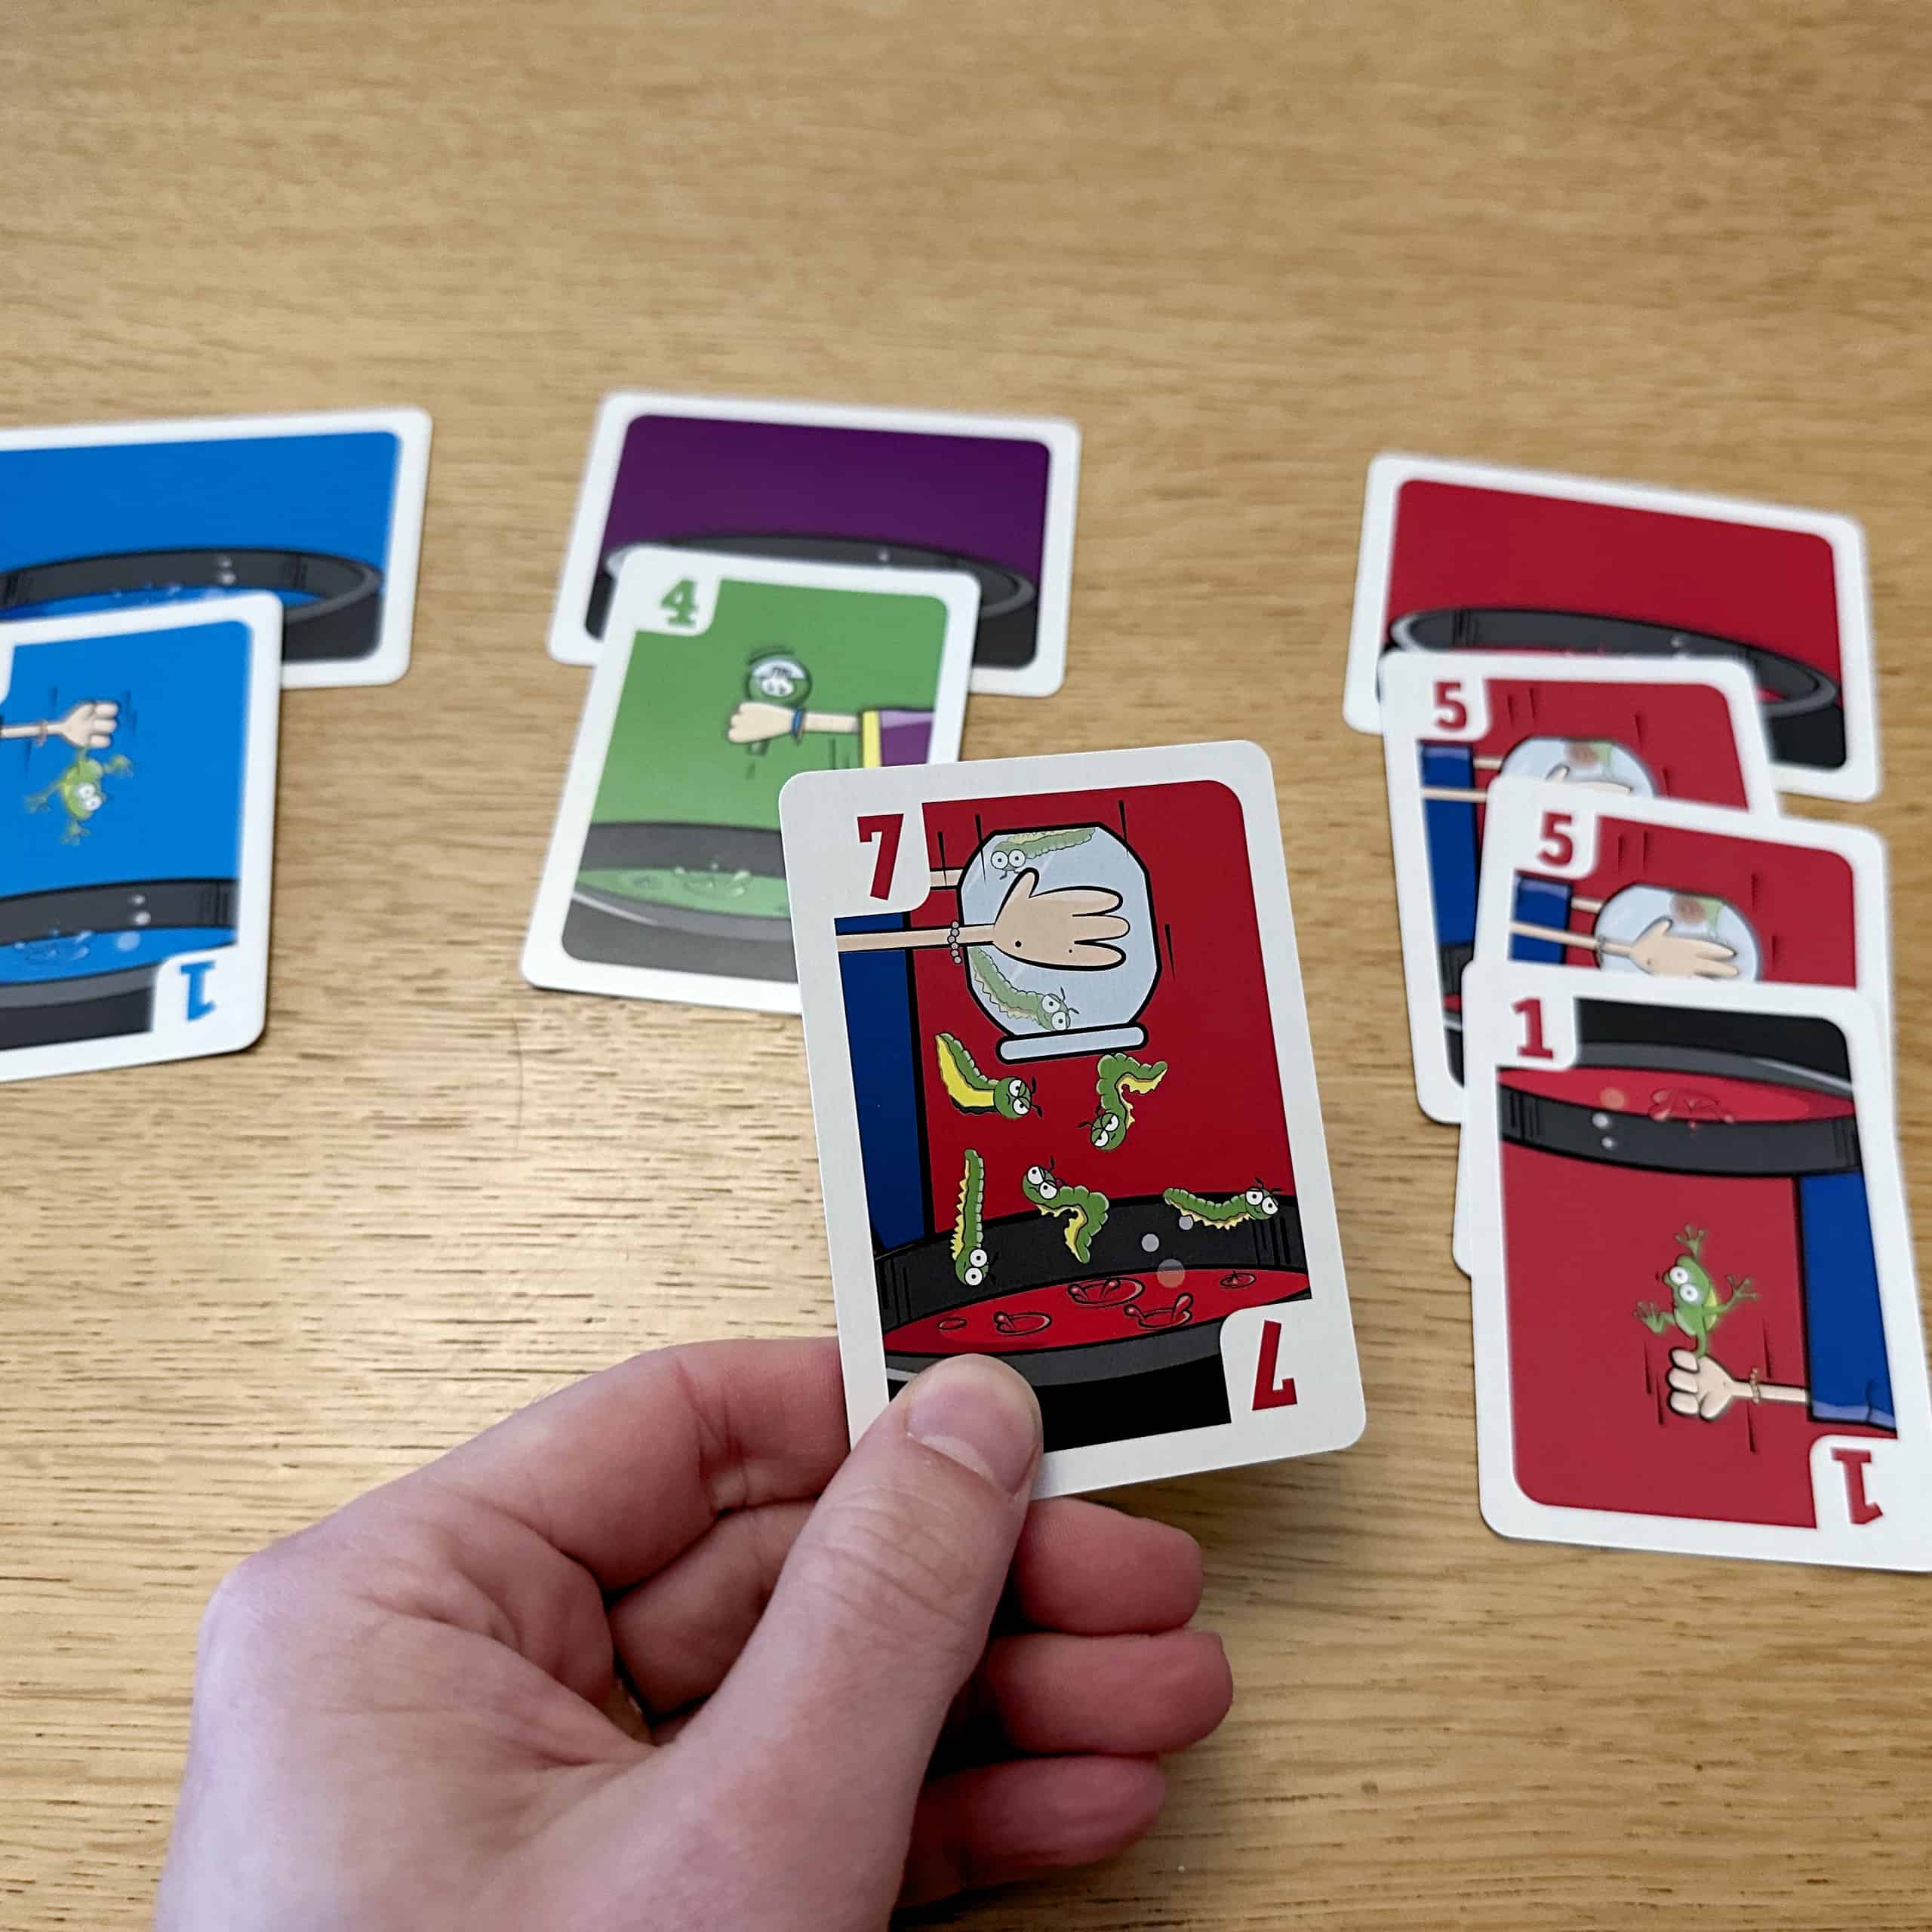 Punainen pata, jossa on kortit 5, 5, ja 1 ja kädessä punainen 7.